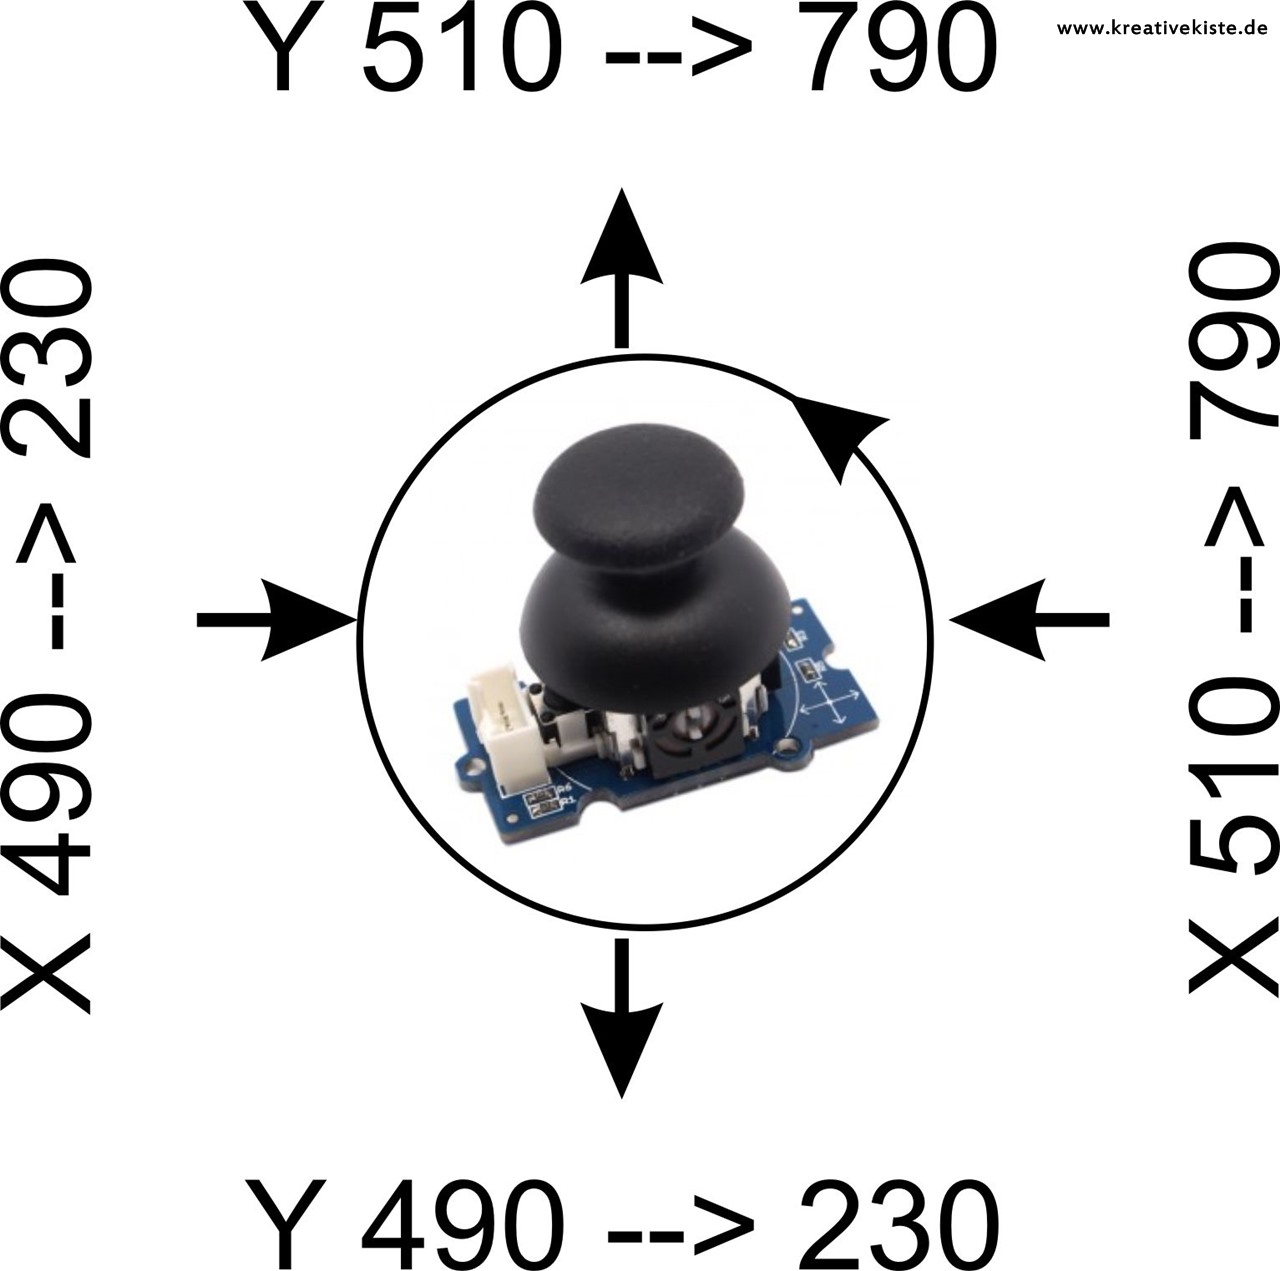 1 ardublock tutorial grove joystick arduino